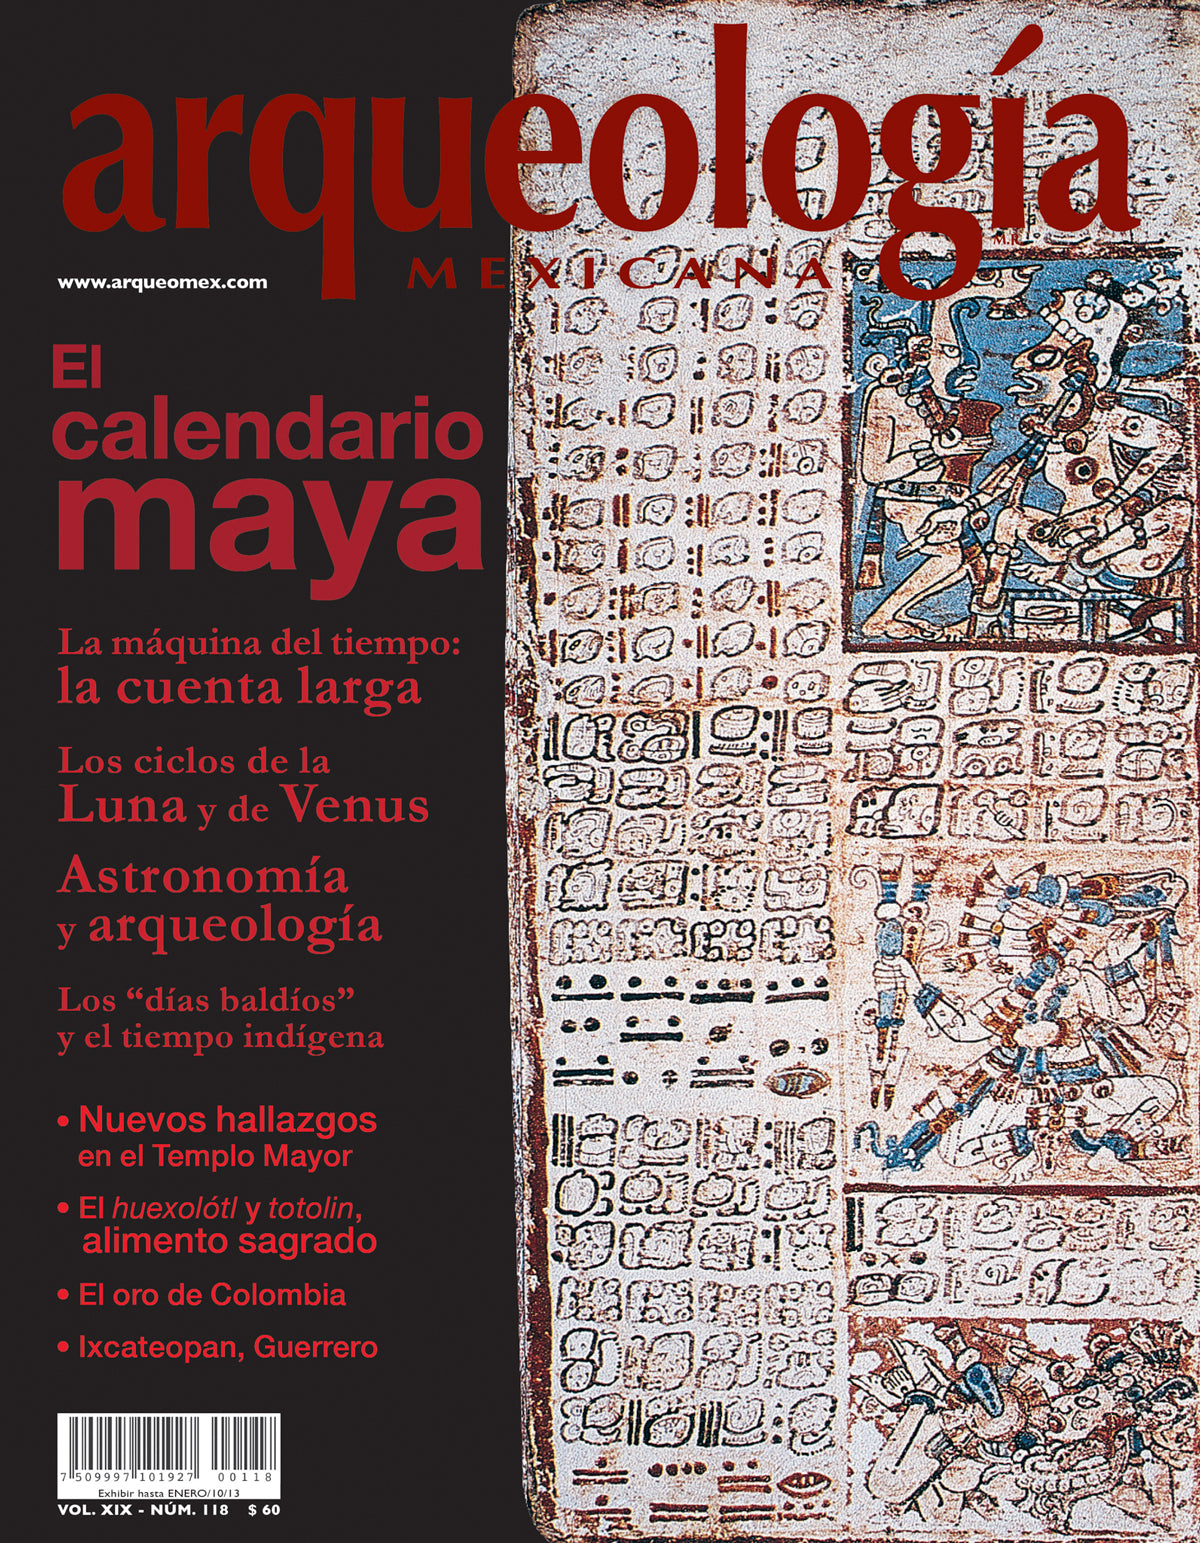 El calendario maya